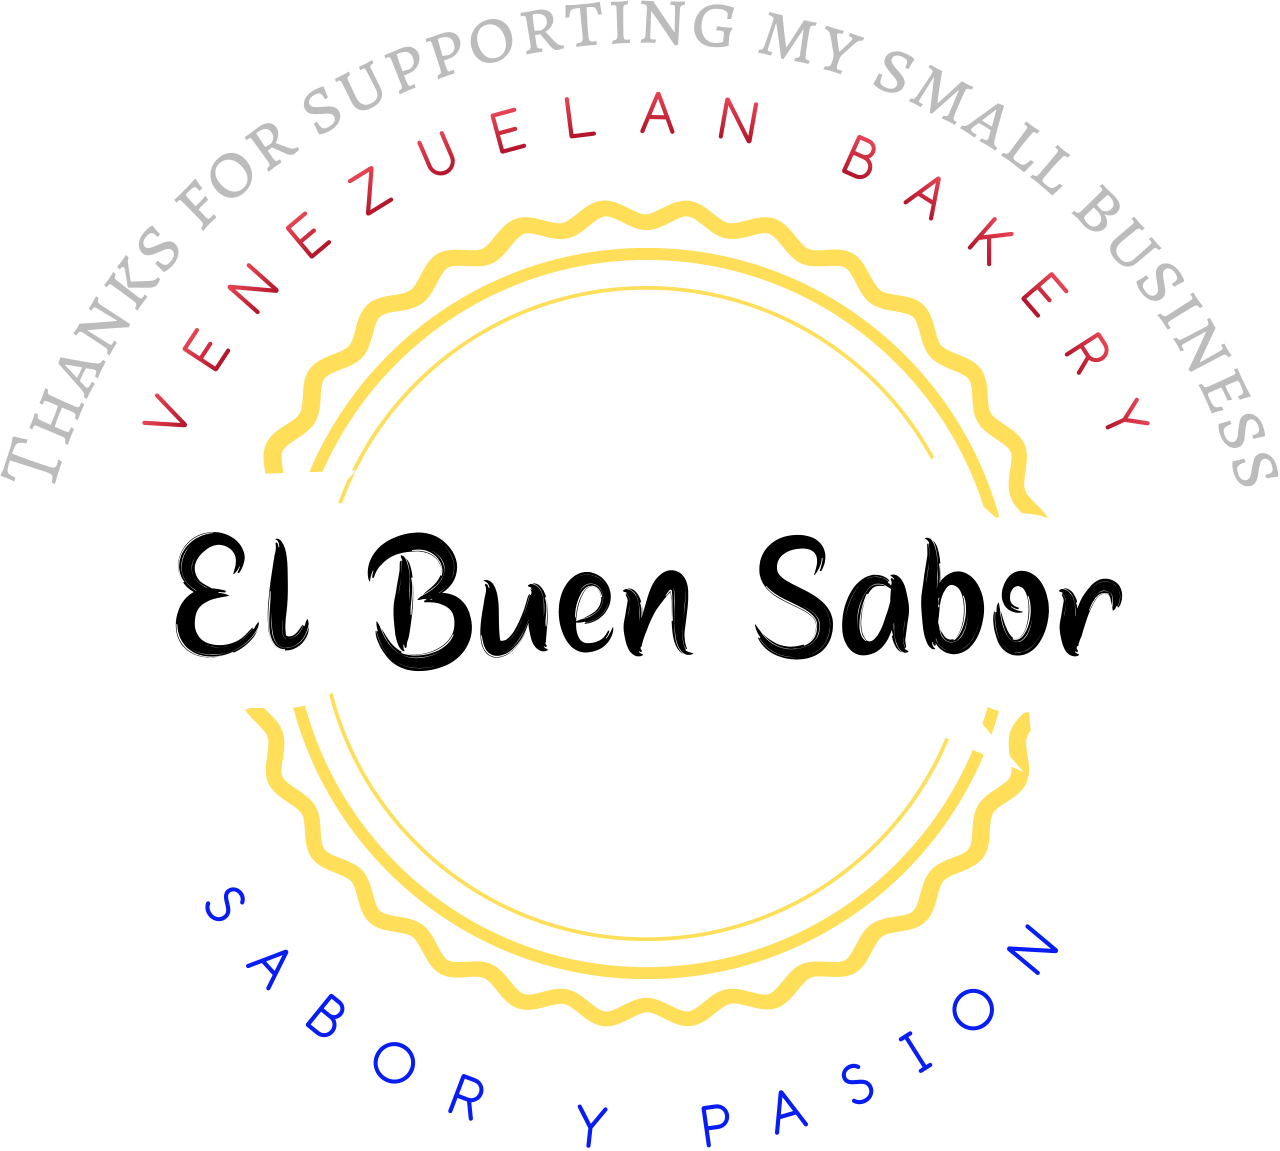 El Buen Sabor's logo